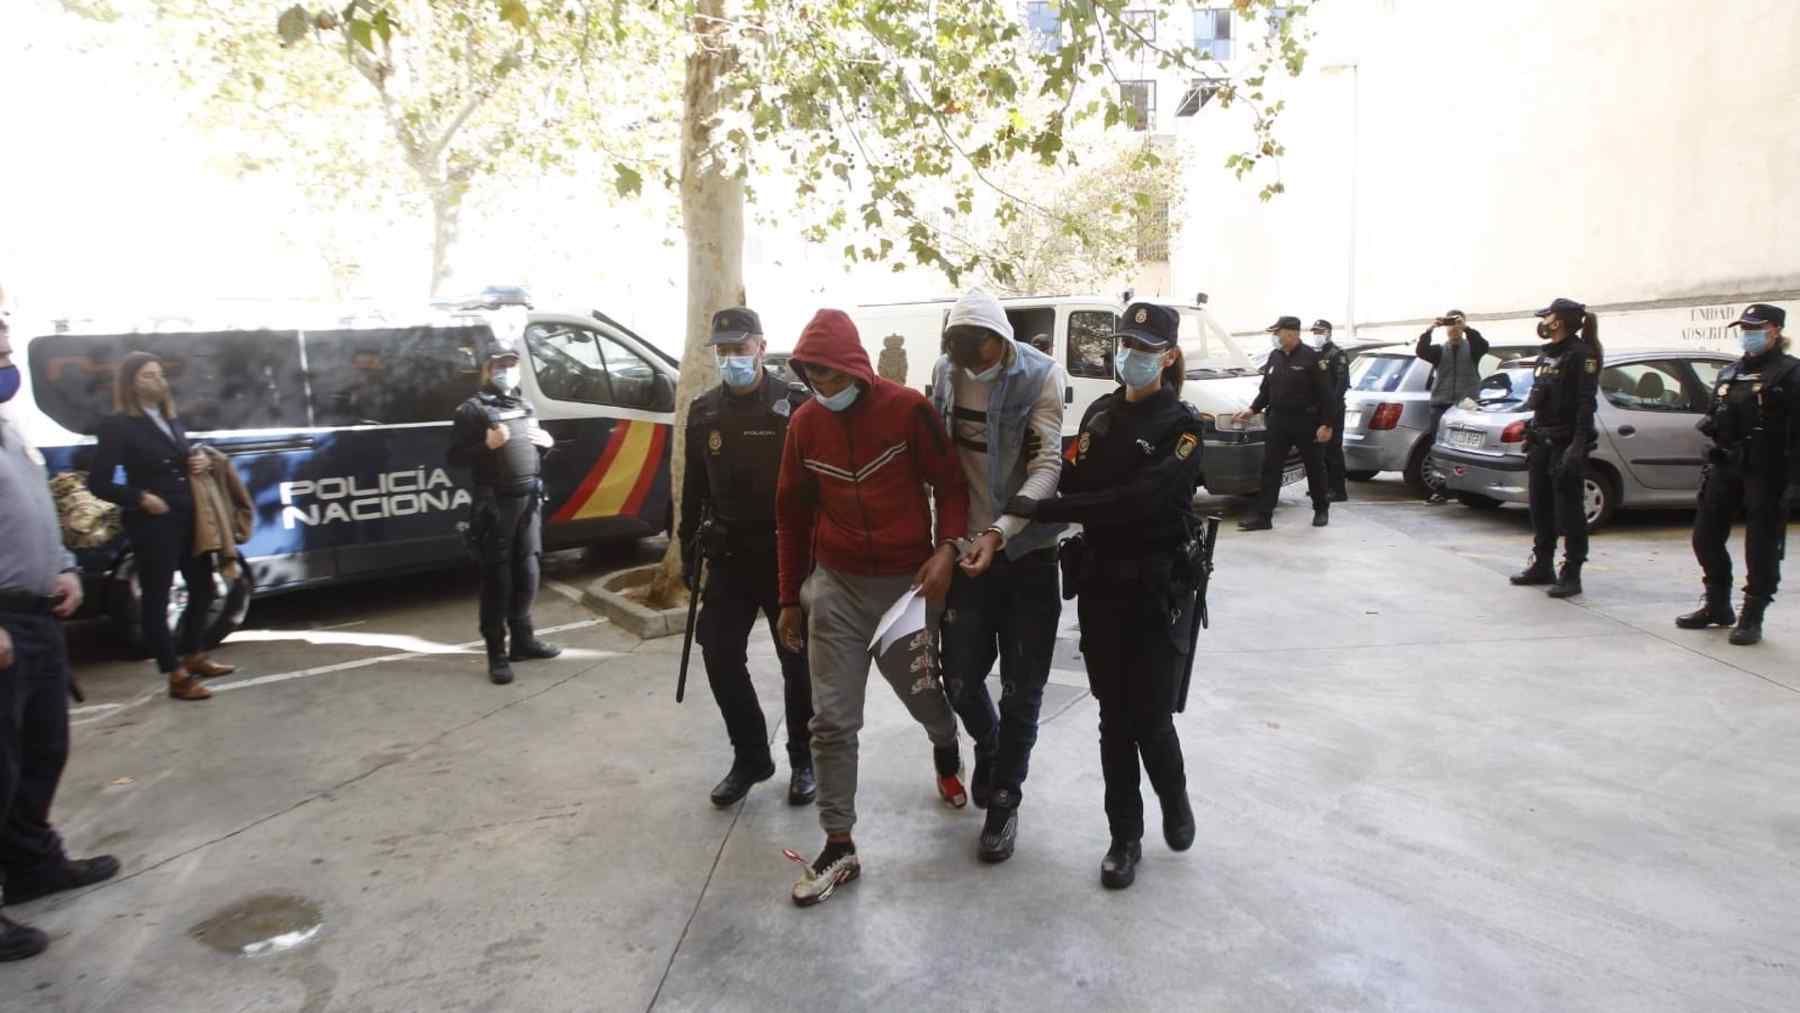 Llegada a los juzgados de los 12 inmigrantes marroquíes fugados del aeropuerto de Palma. FOTO: Europa Press